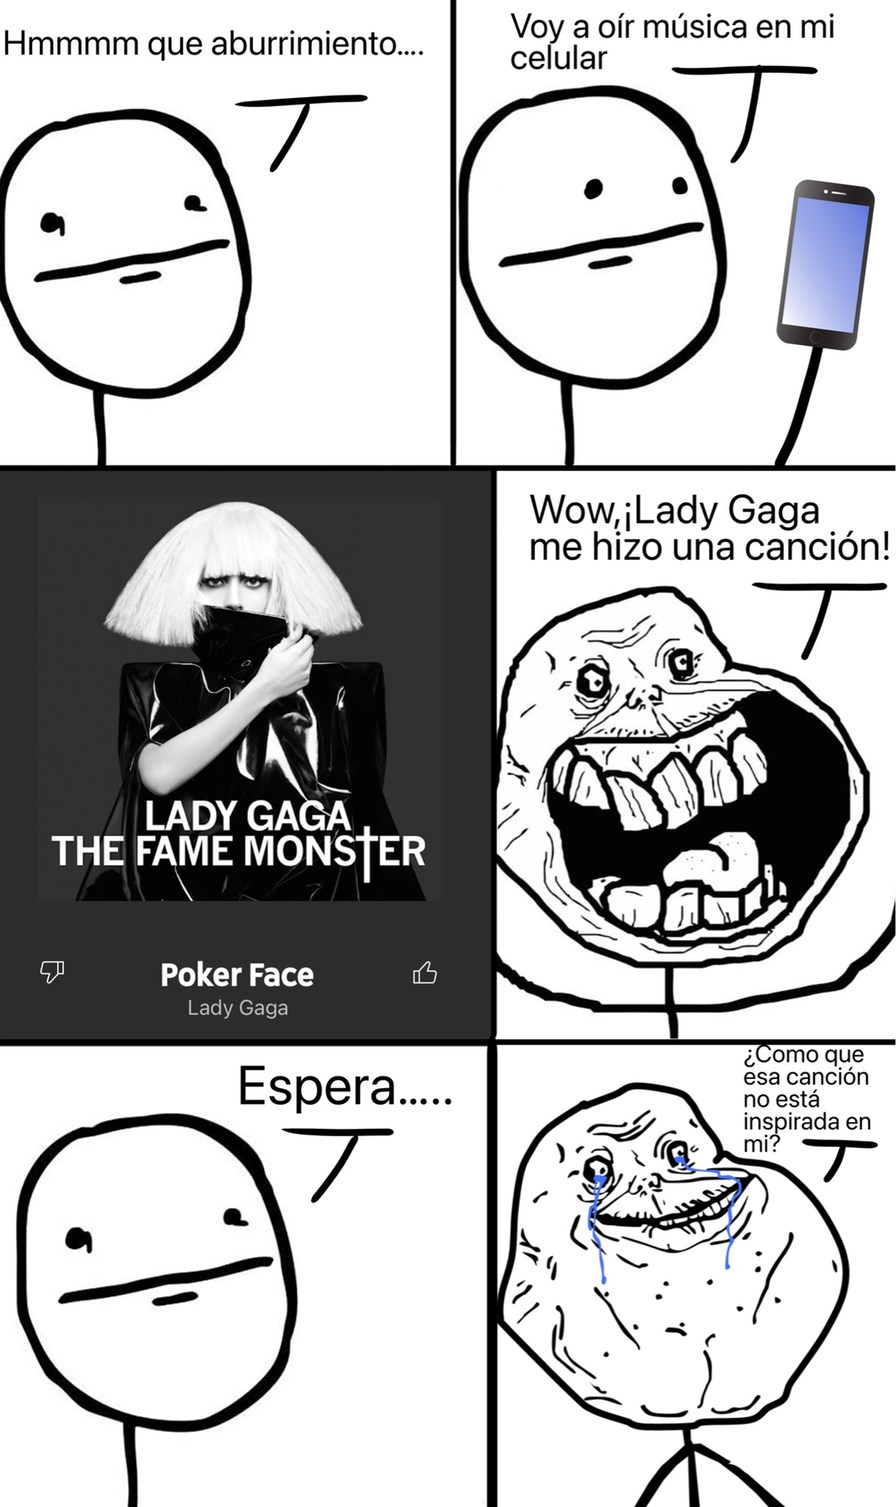 ¿Como que la canción de Poker Face no está inspirada en el meme?